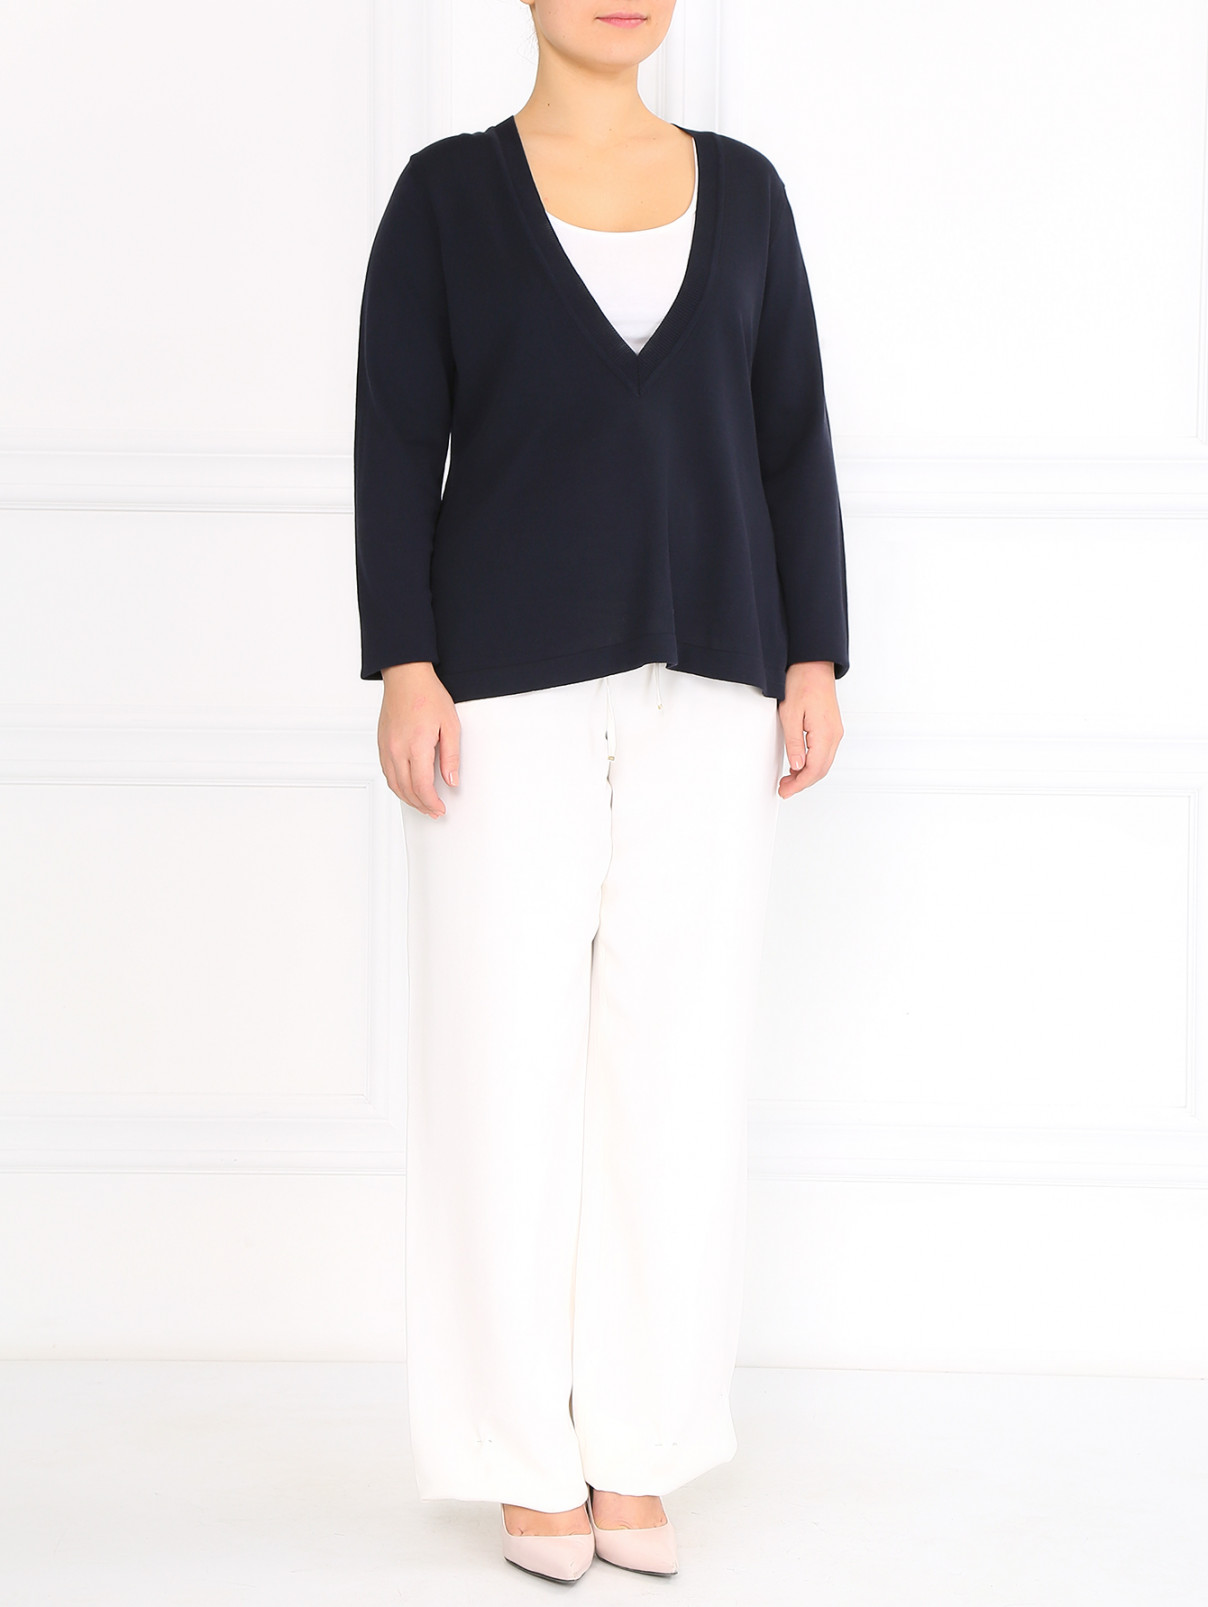 Шелковые брюки свободного кроя Marina Rinaldi  –  Модель Общий вид  – Цвет:  Белый